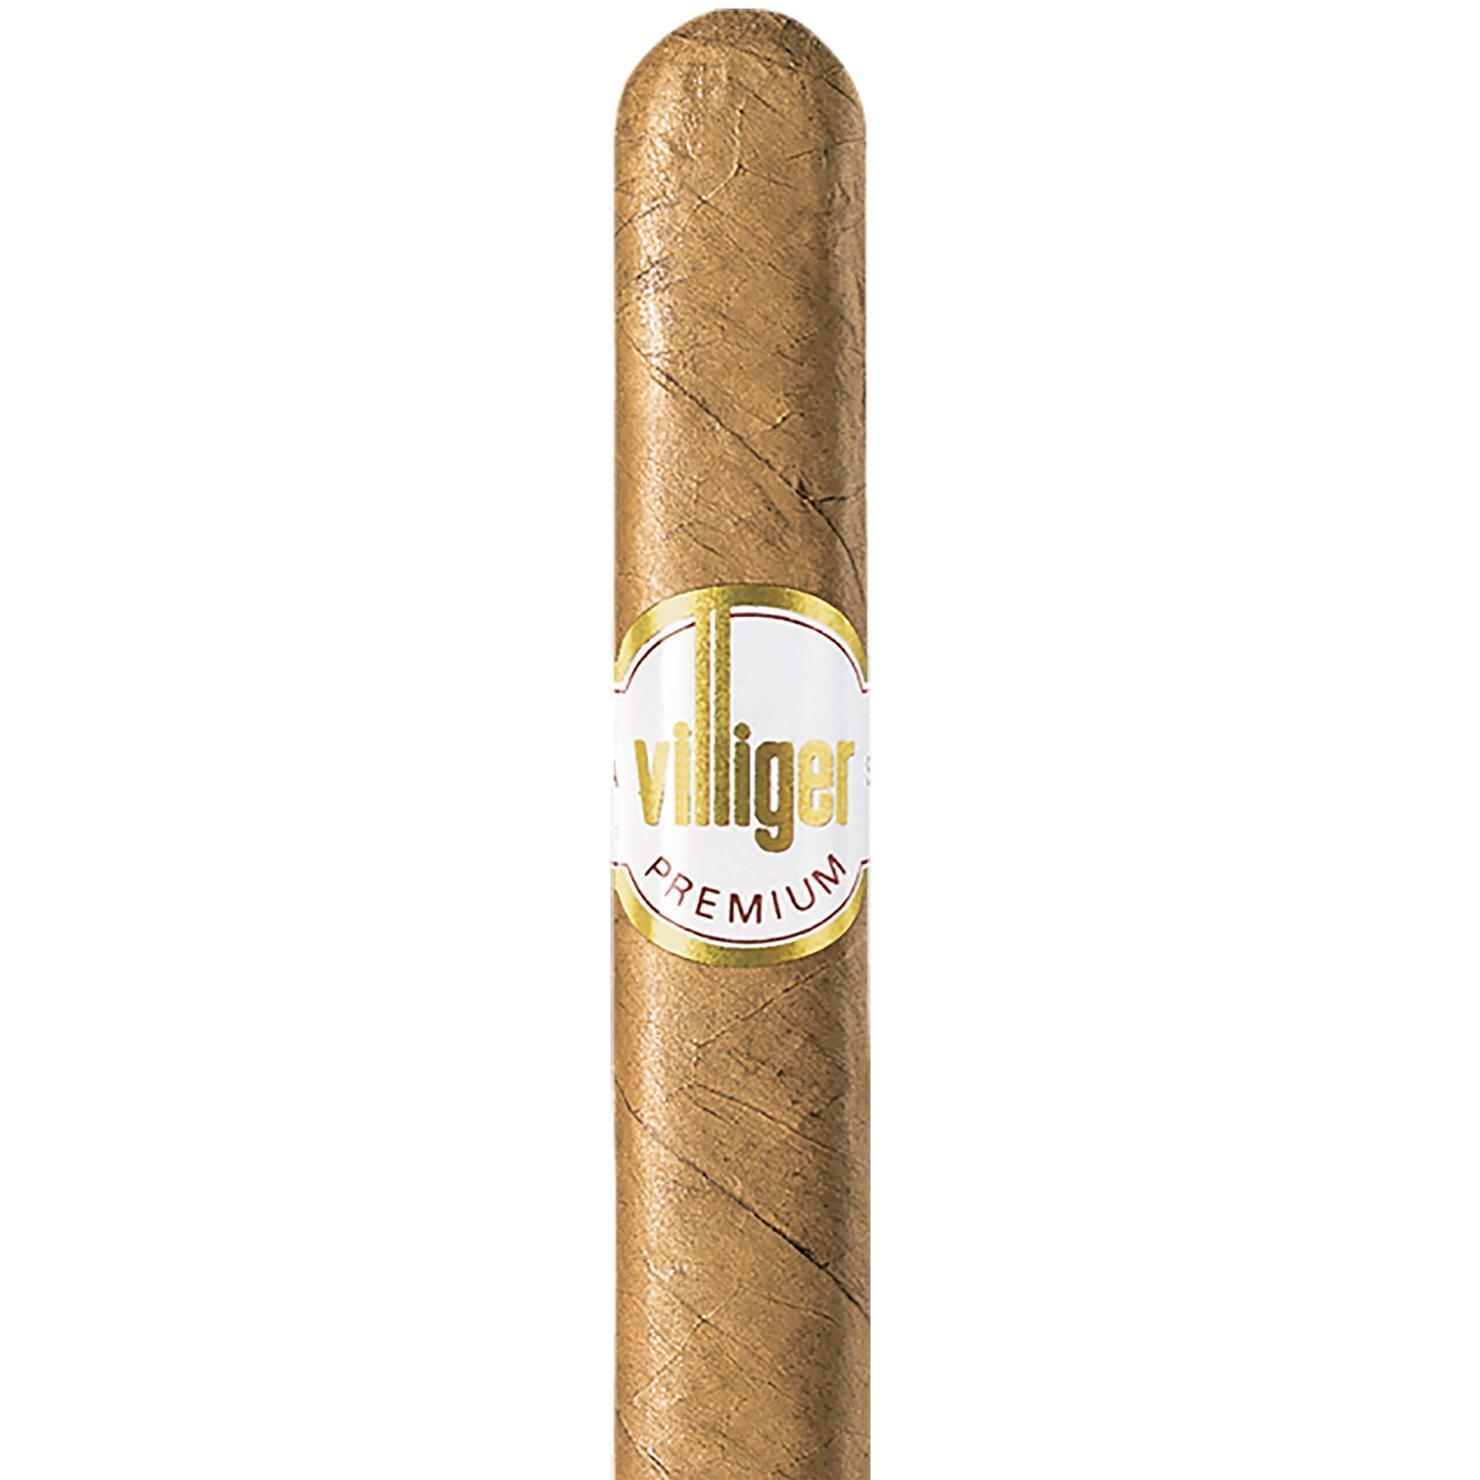 Villiger Premium No 3 Sumatra 1 x 5 Zigarren